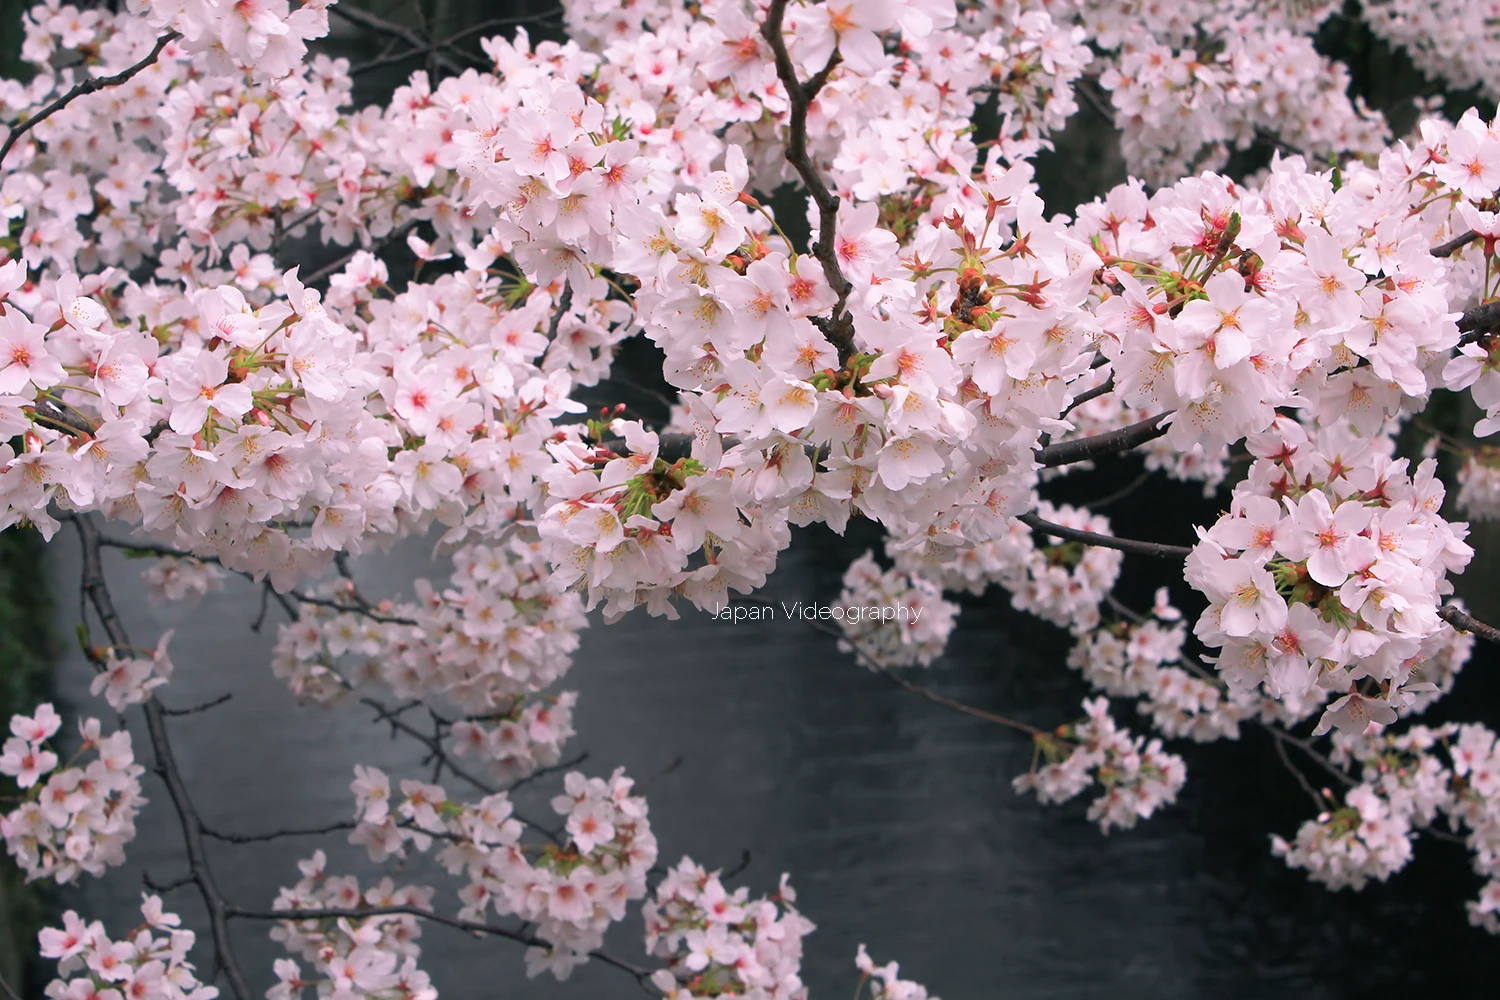 東京都の桜名所 目黒川の桜並木 満開の花びら